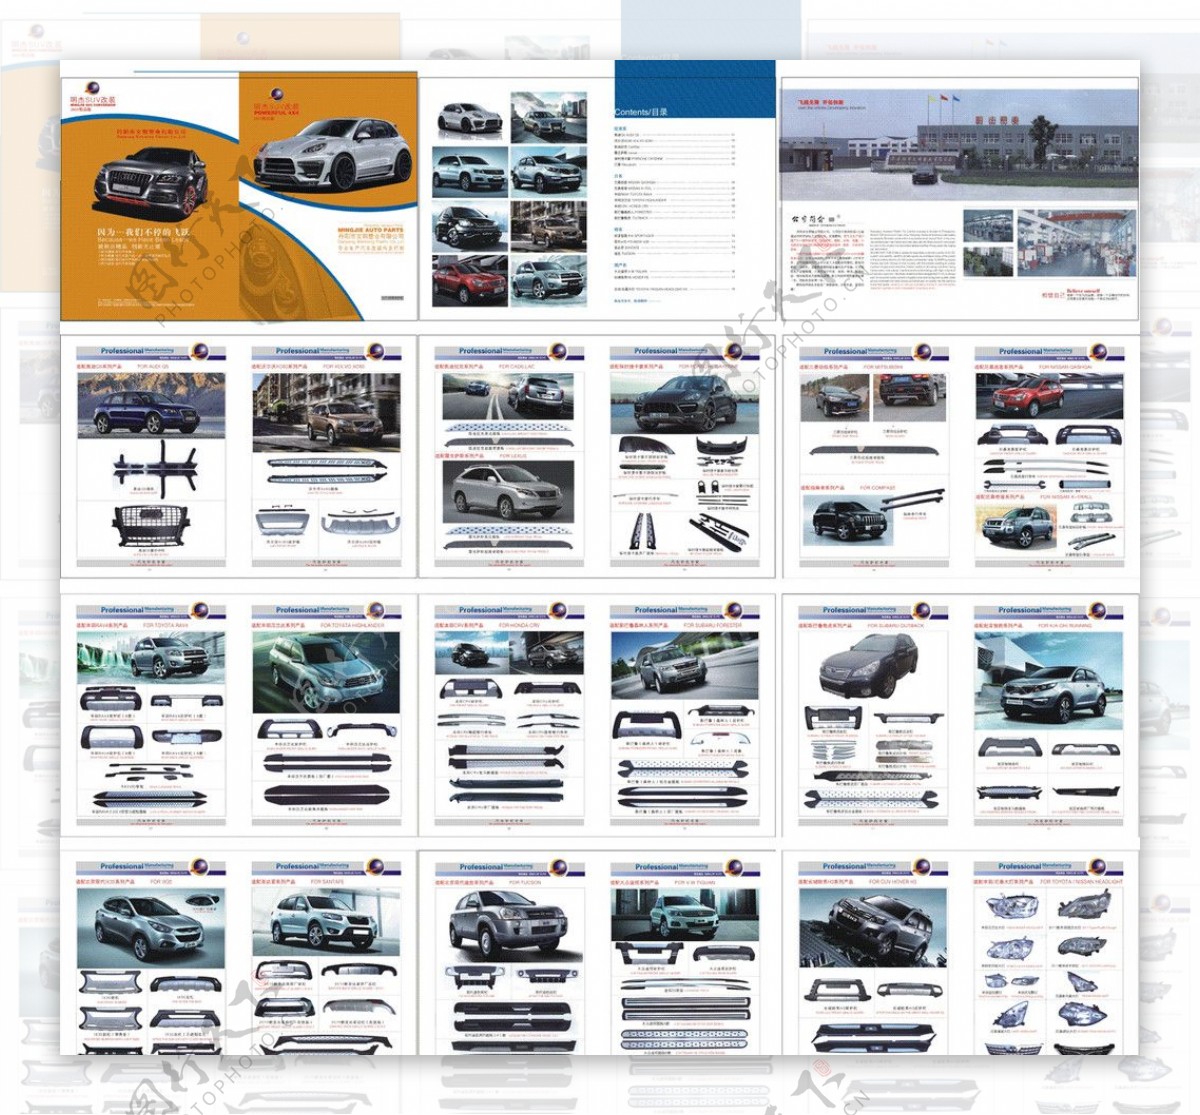 SUV汽车产品手册图片